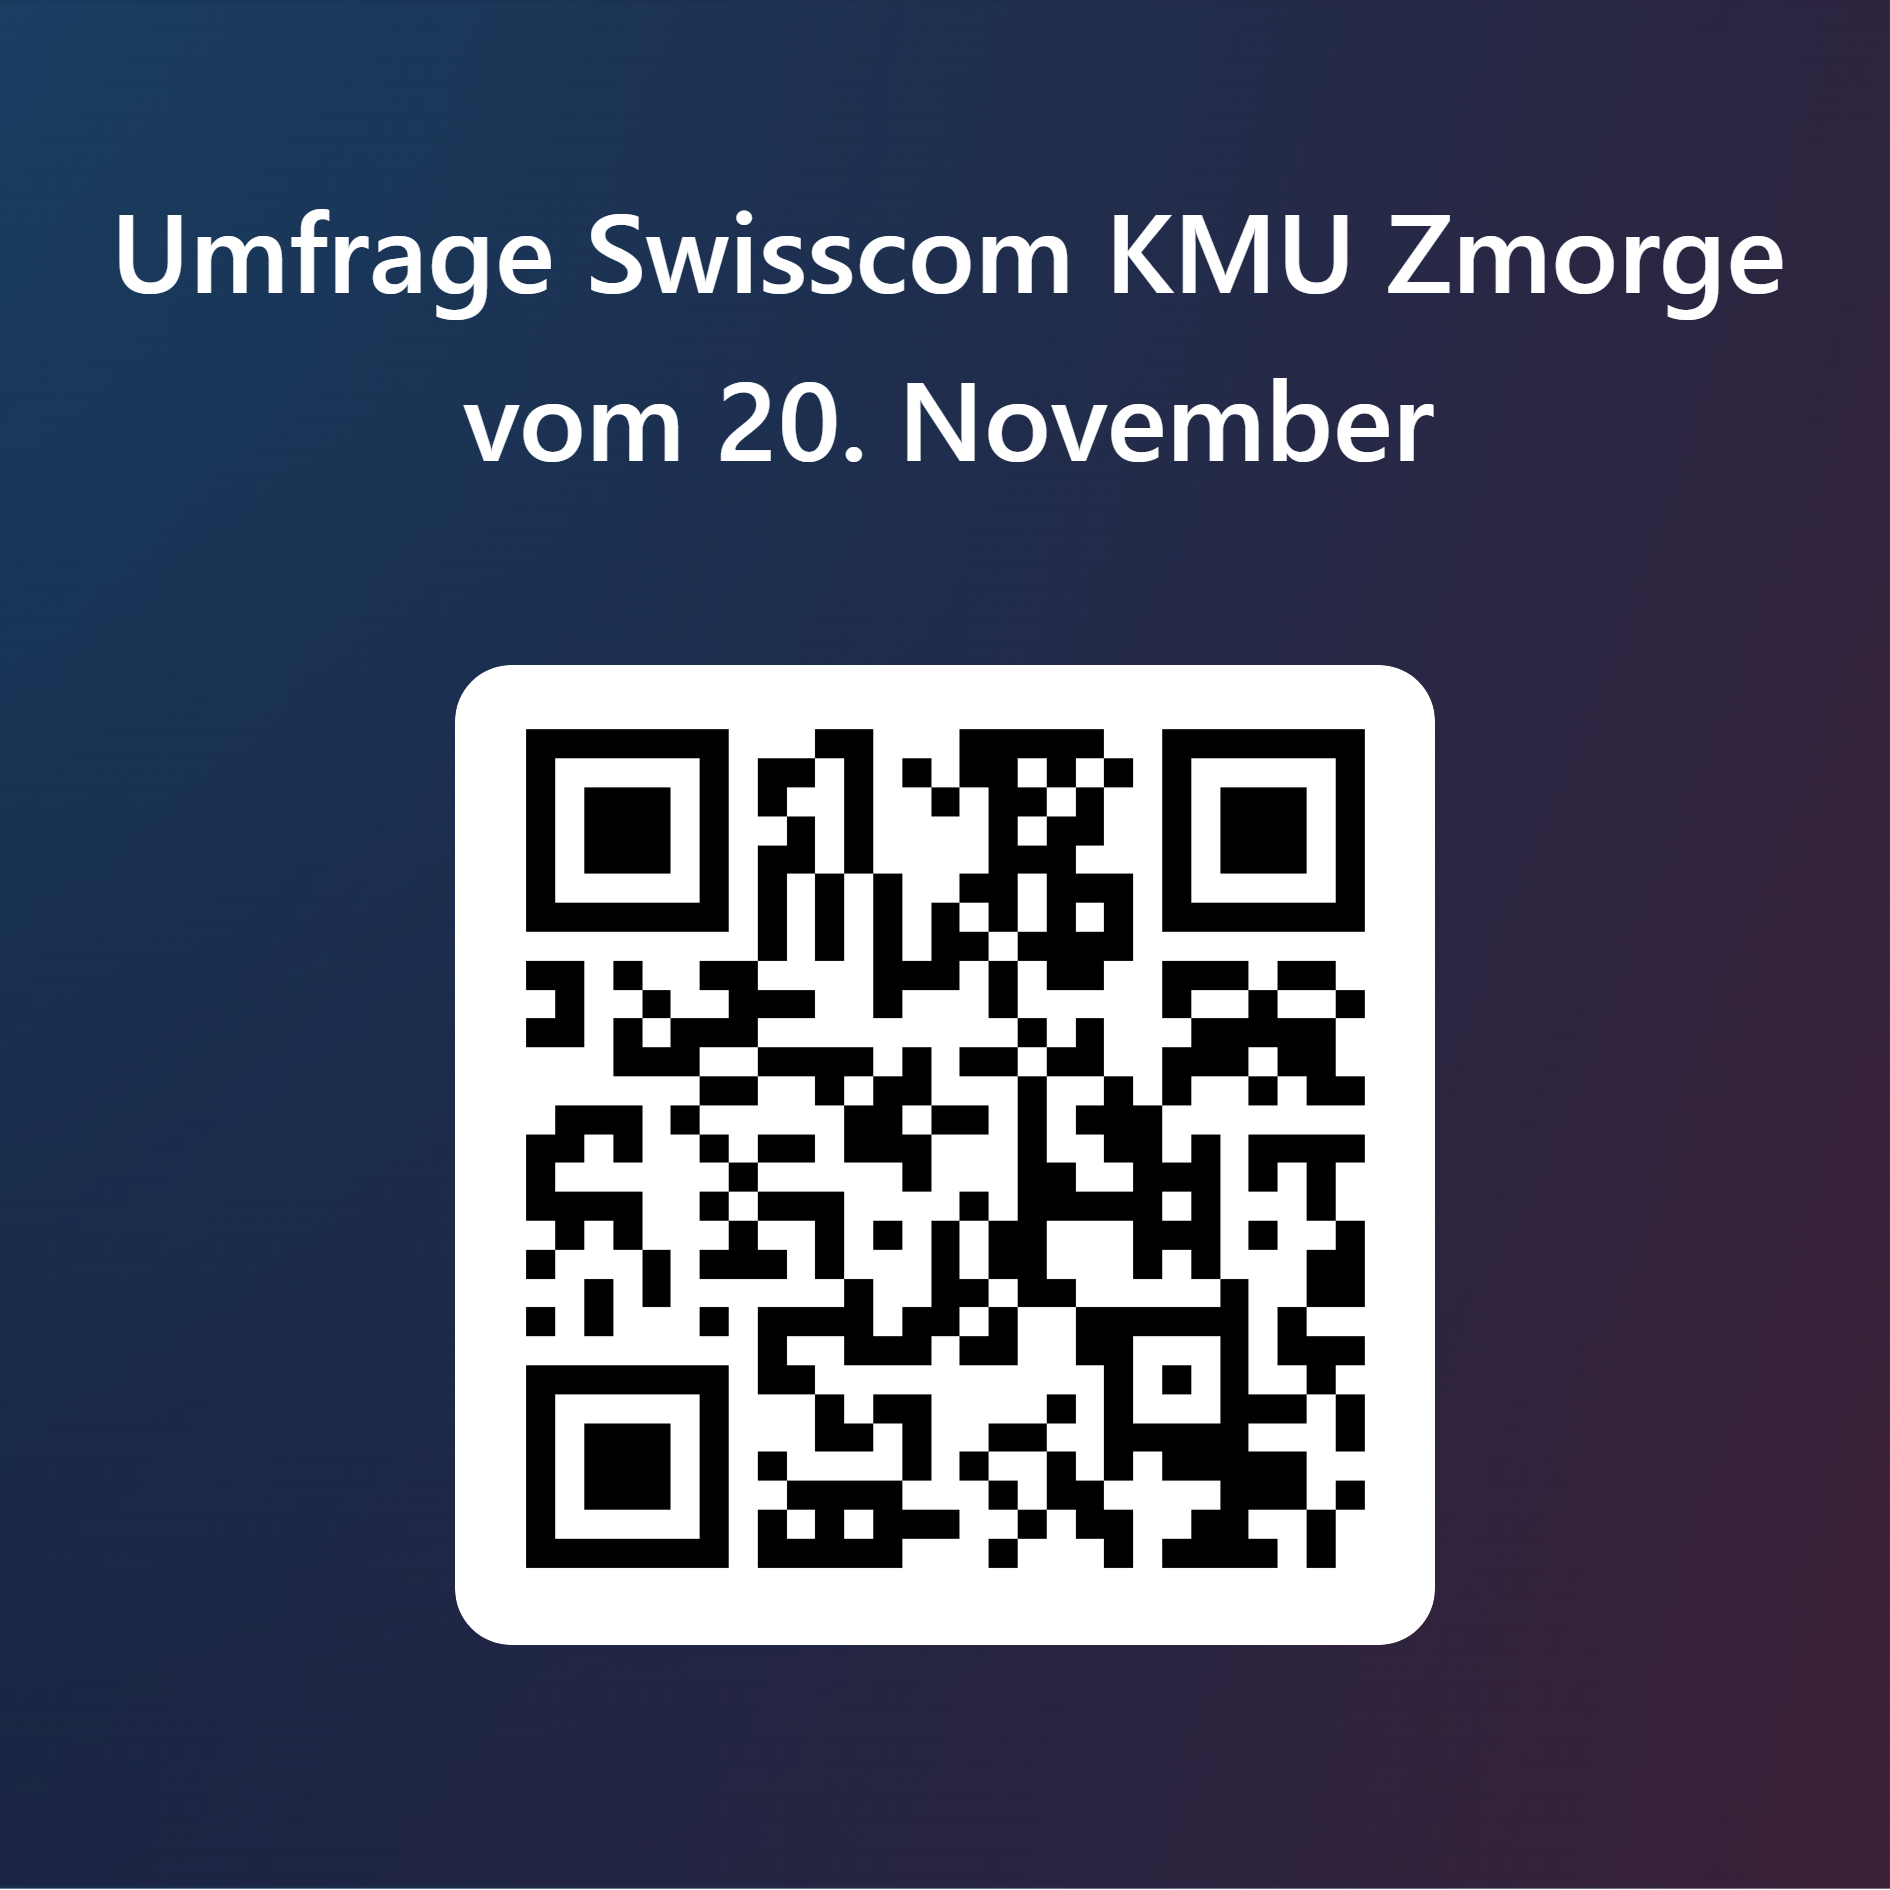 QRCode für Umfrage Swisscom KMU Zmorge vom 20. November